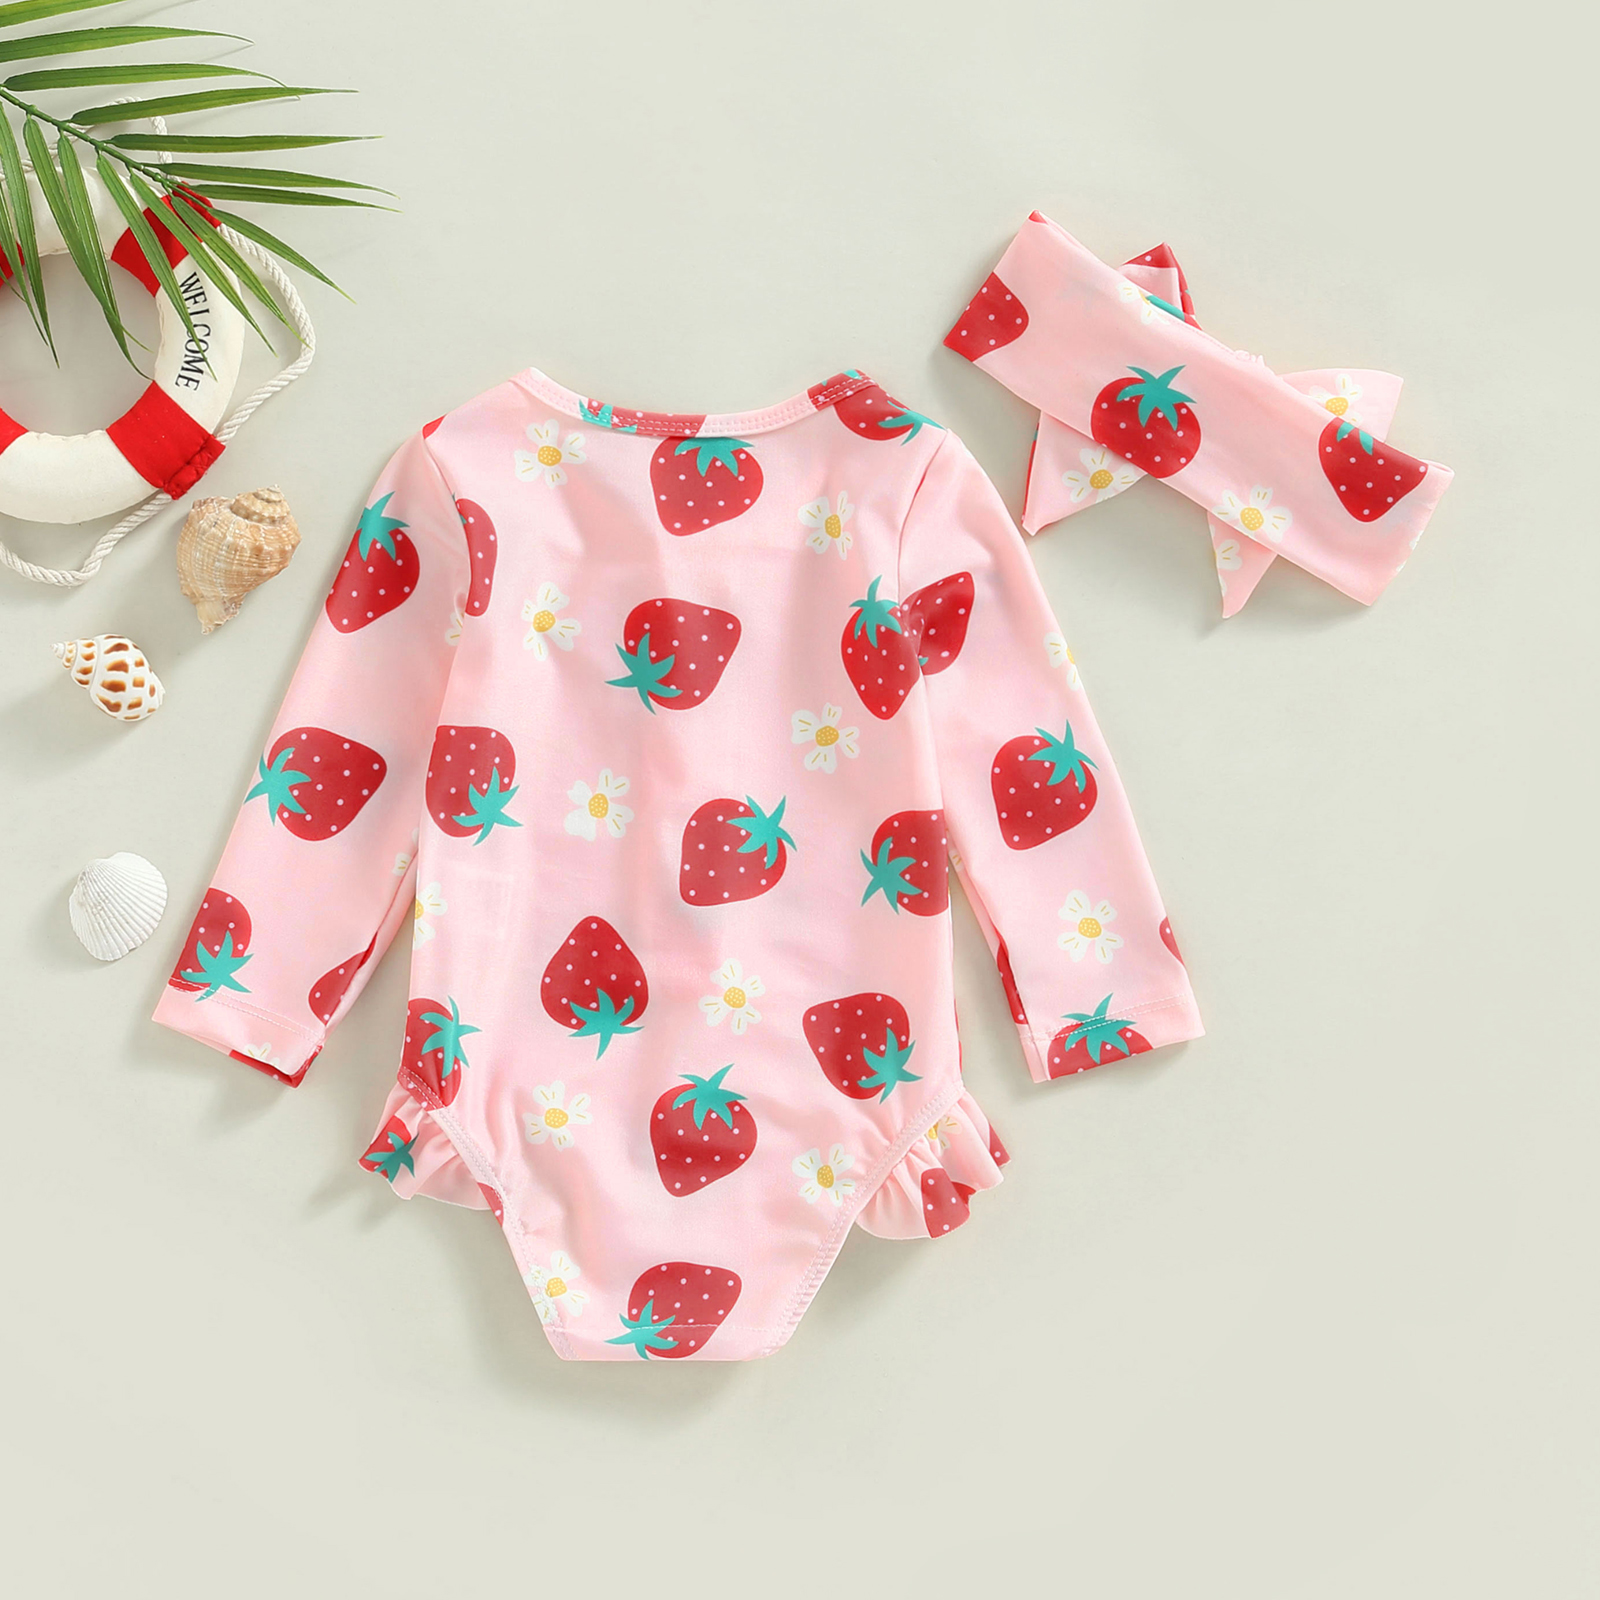 Toddler Baby Girl Swimsuits Strawberry Print Truskawkowy zamek stroju kąpielowym i opaska na głowę kostiumy kąpielowe 6m-3t